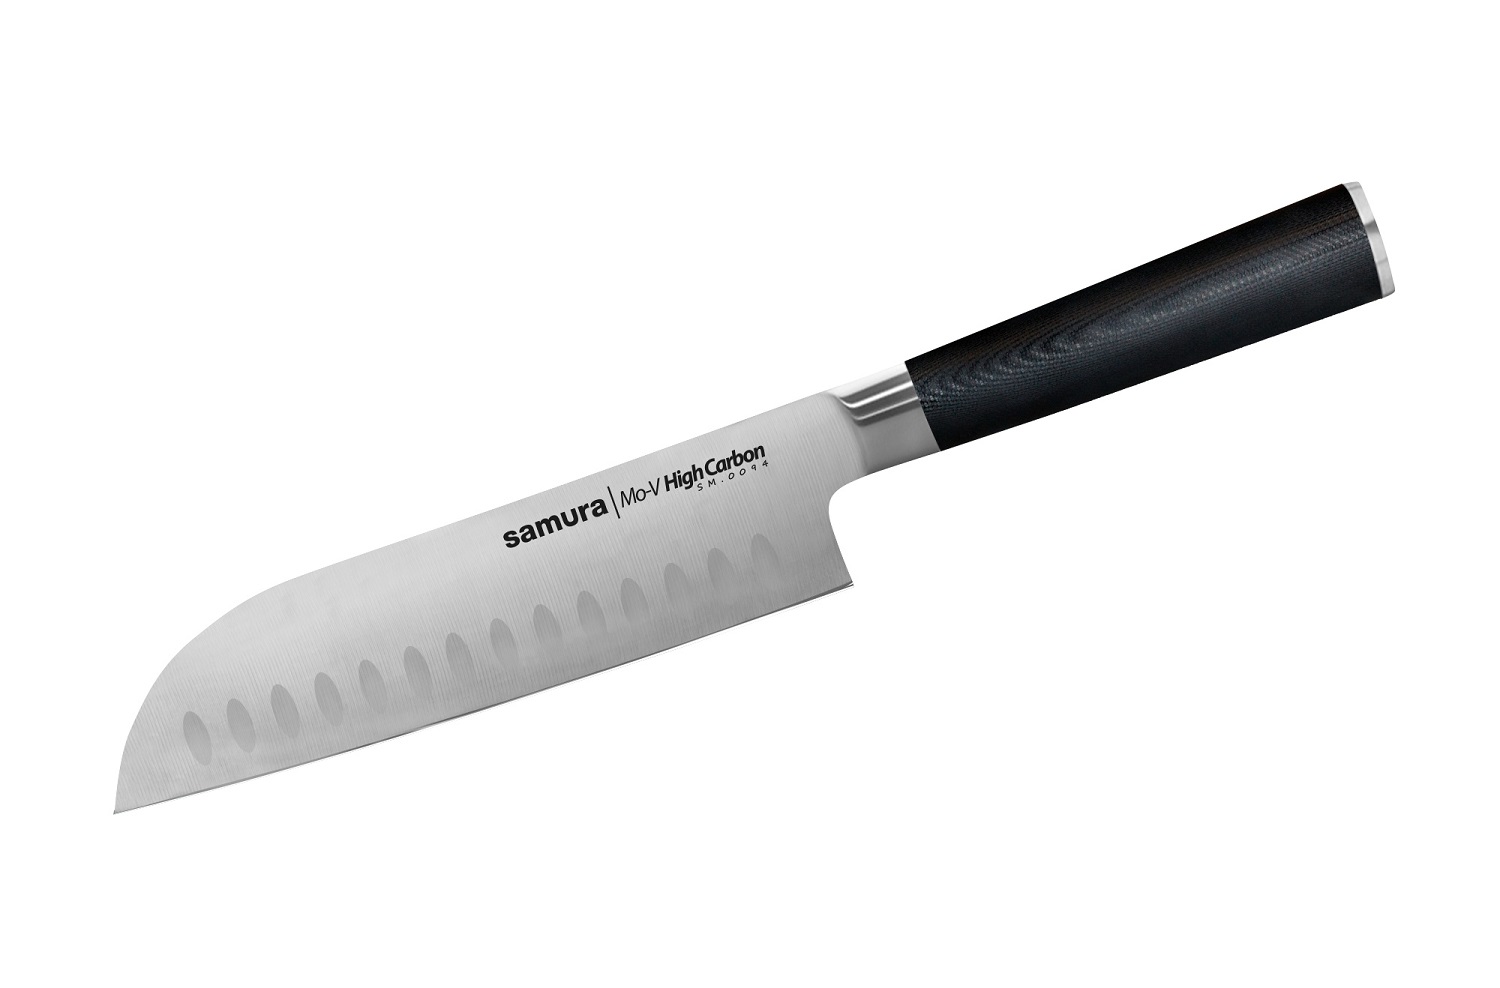 Нож Samura сантоку Mo-V, 18 см, G-10 нож универсальный mo v 12 5 см sm 0021 k samura